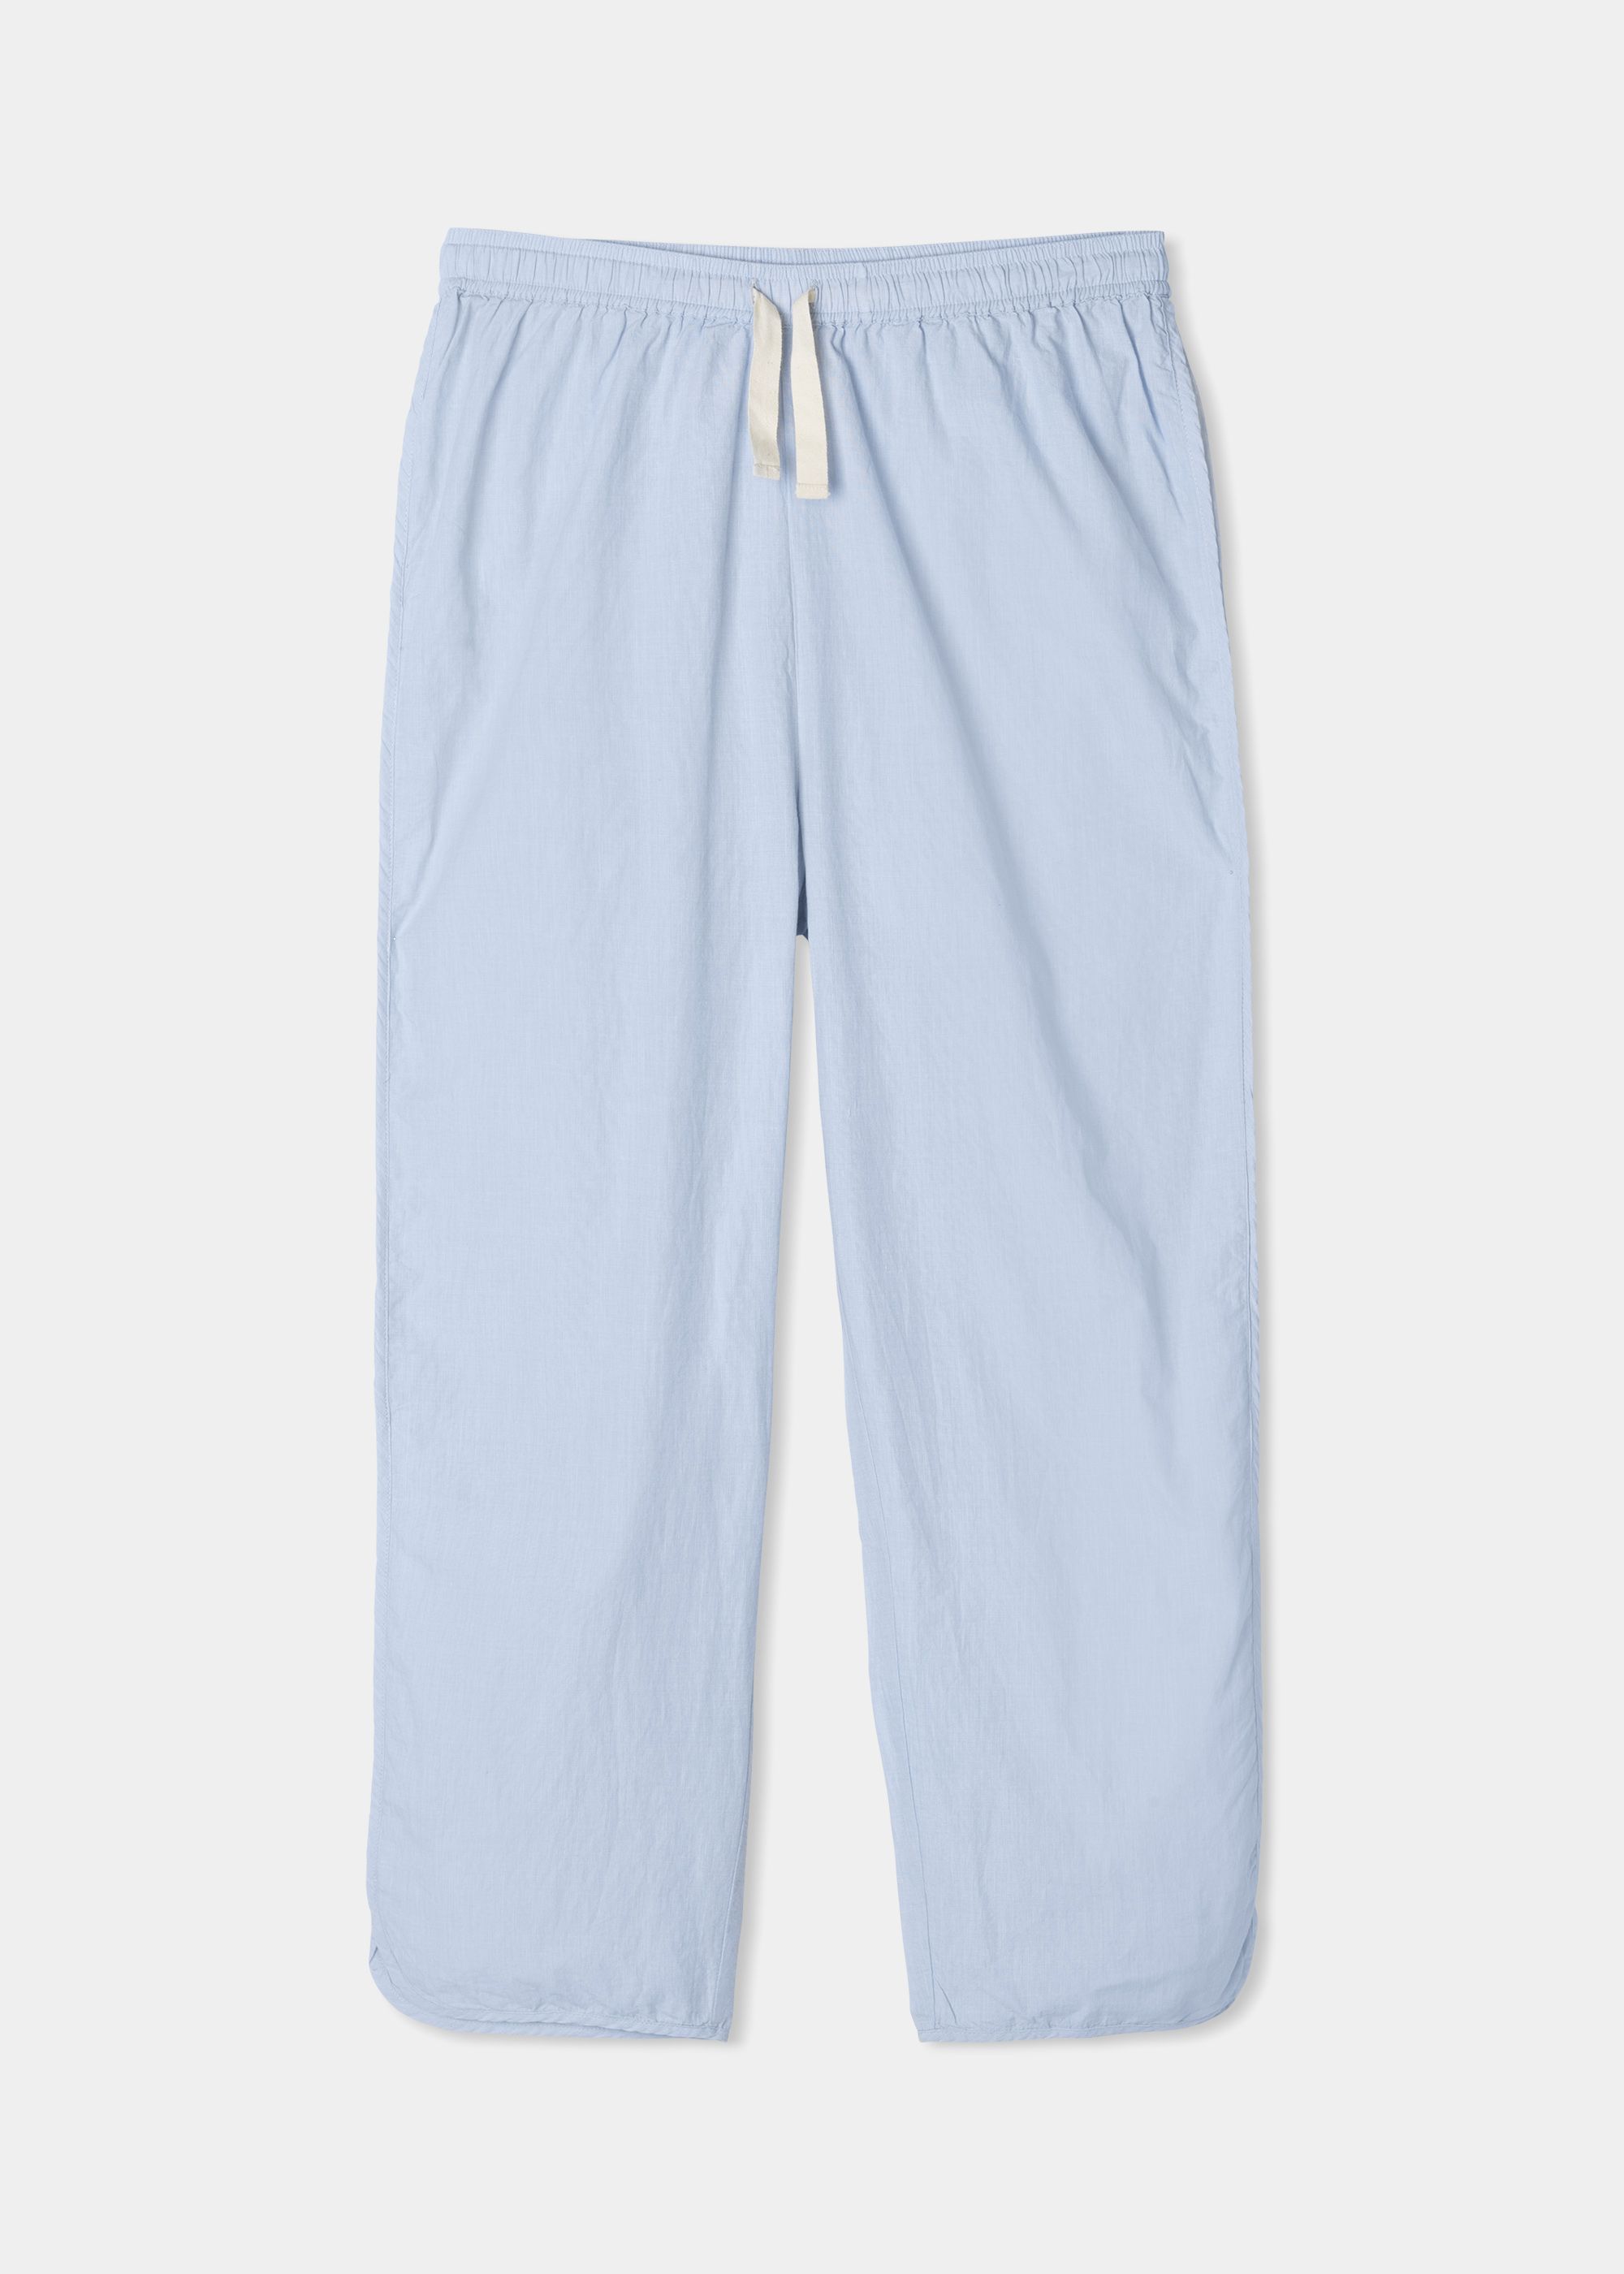 Pyjamas - Pyjamas poplin